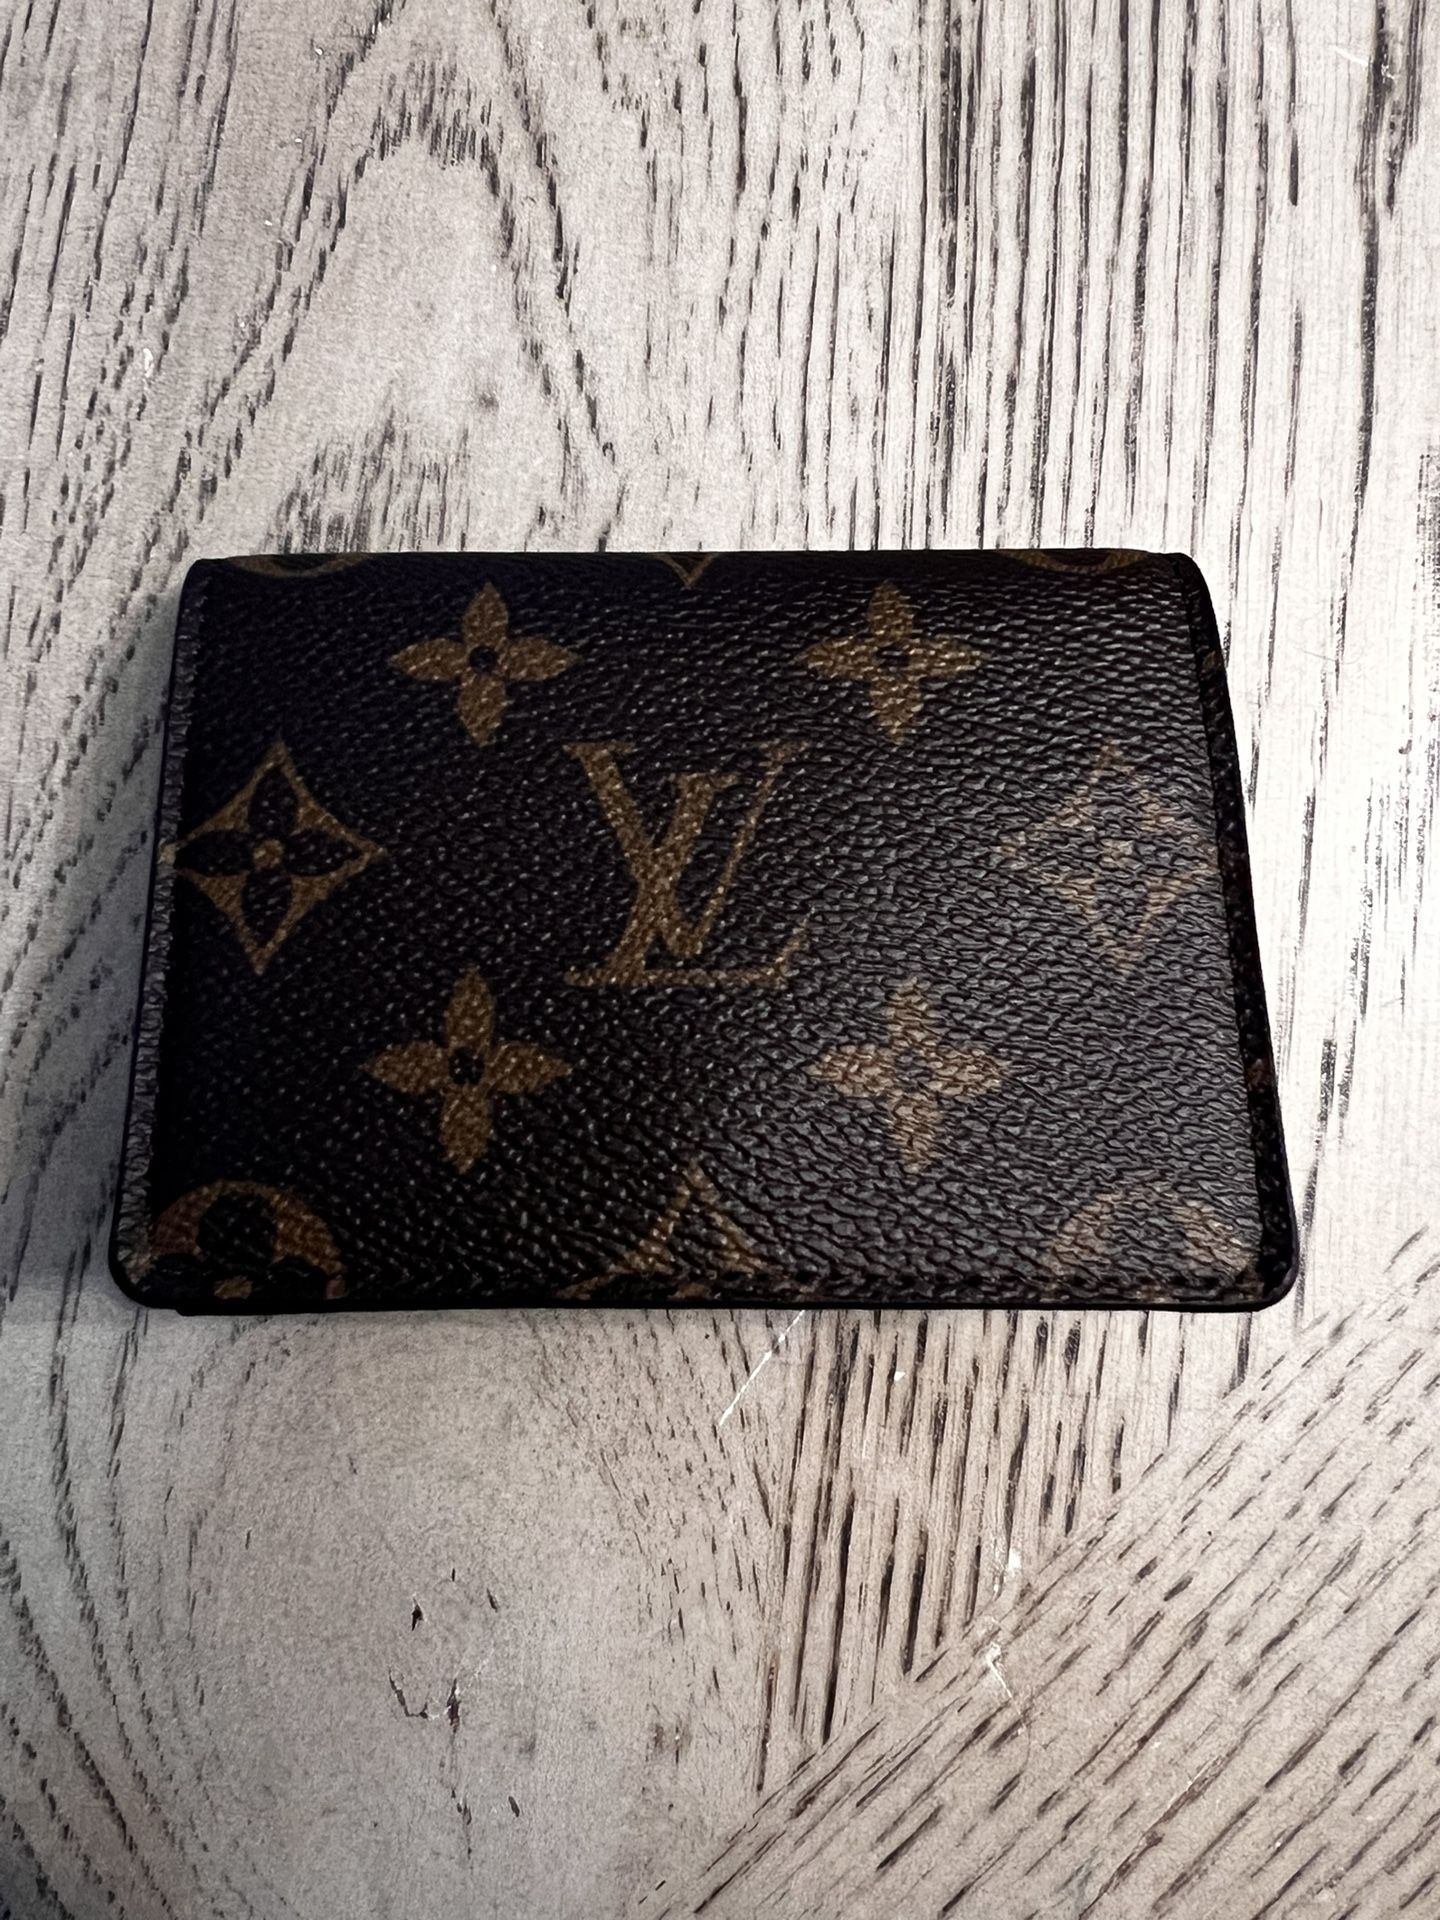 Louis Vuitton Card Holder Men Women Wallet Designer Luxury Gift for Sale in  Valrico, FL - OfferUp